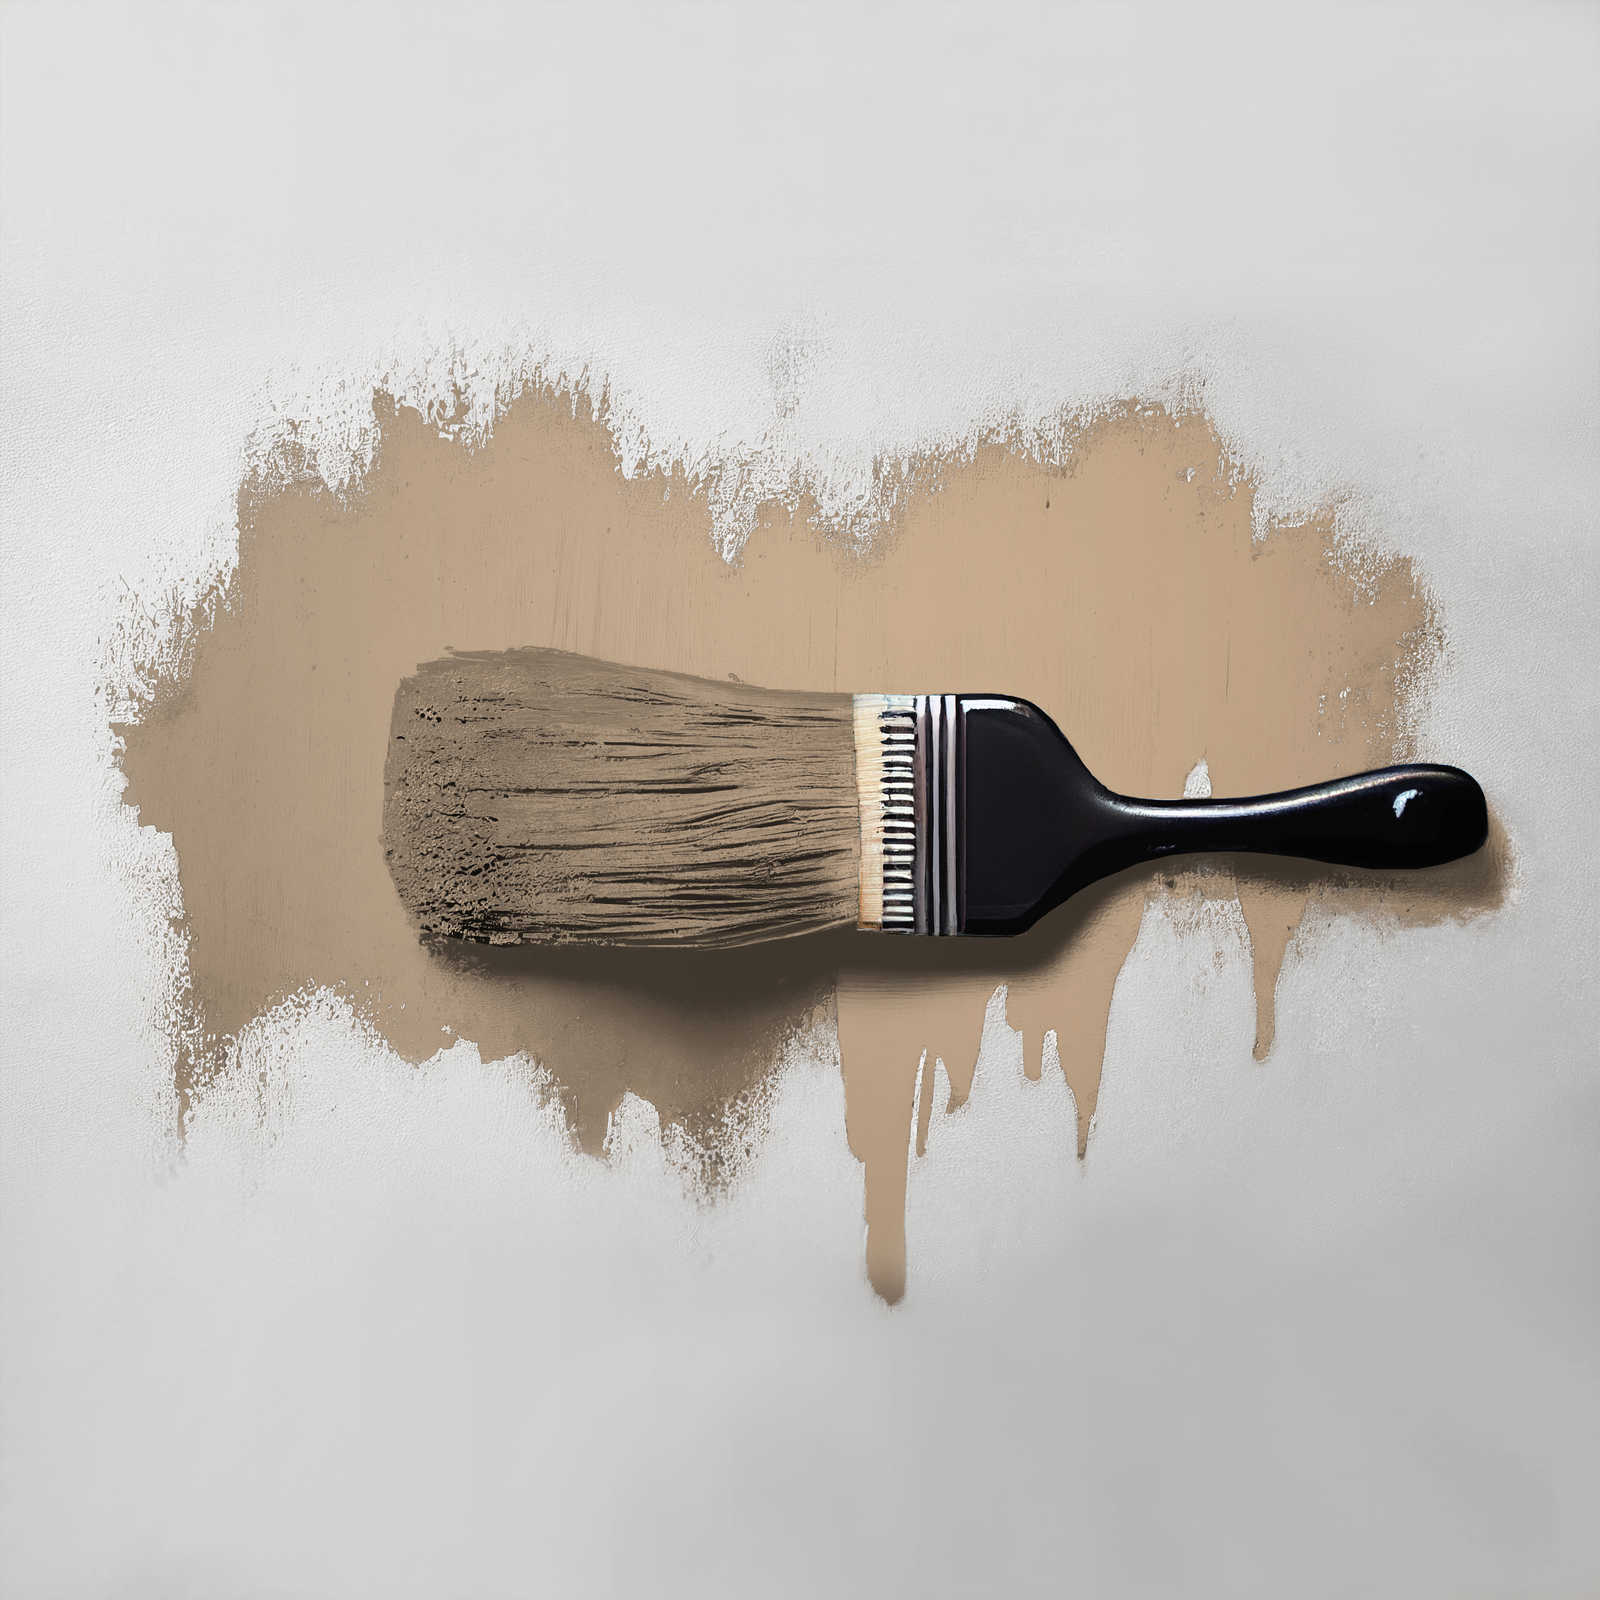             Peinture murale TCK6005 »Friendly Fennel« en beige-brun confortable – 2,5 litres
        